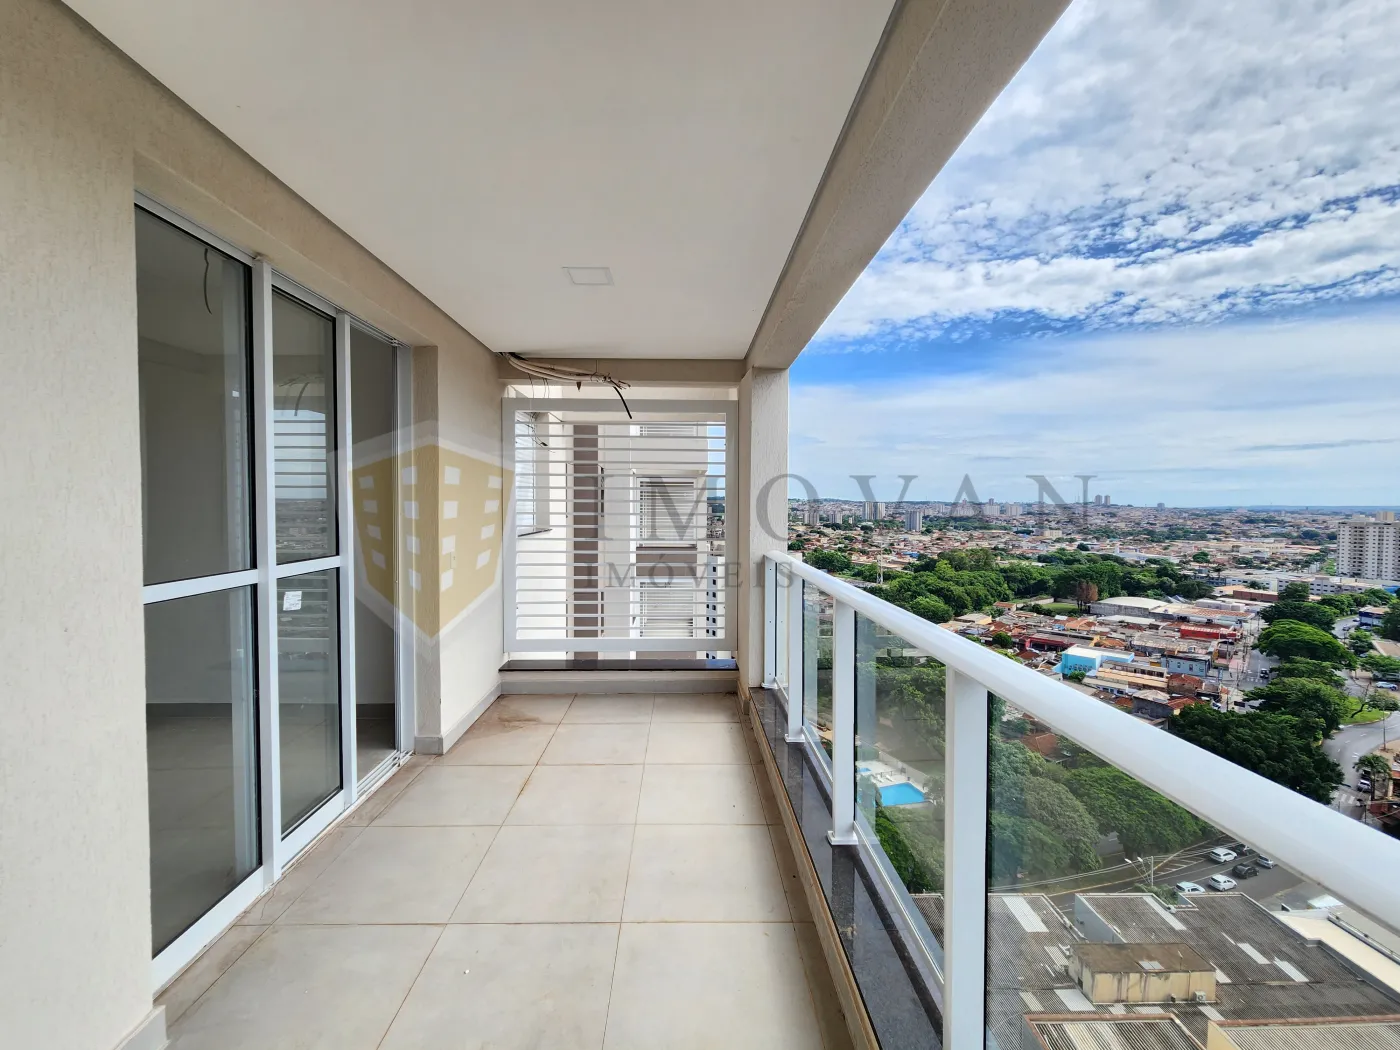 Comprar Apartamento / Padrão em Ribeirão Preto R$ 500.000,00 - Foto 9